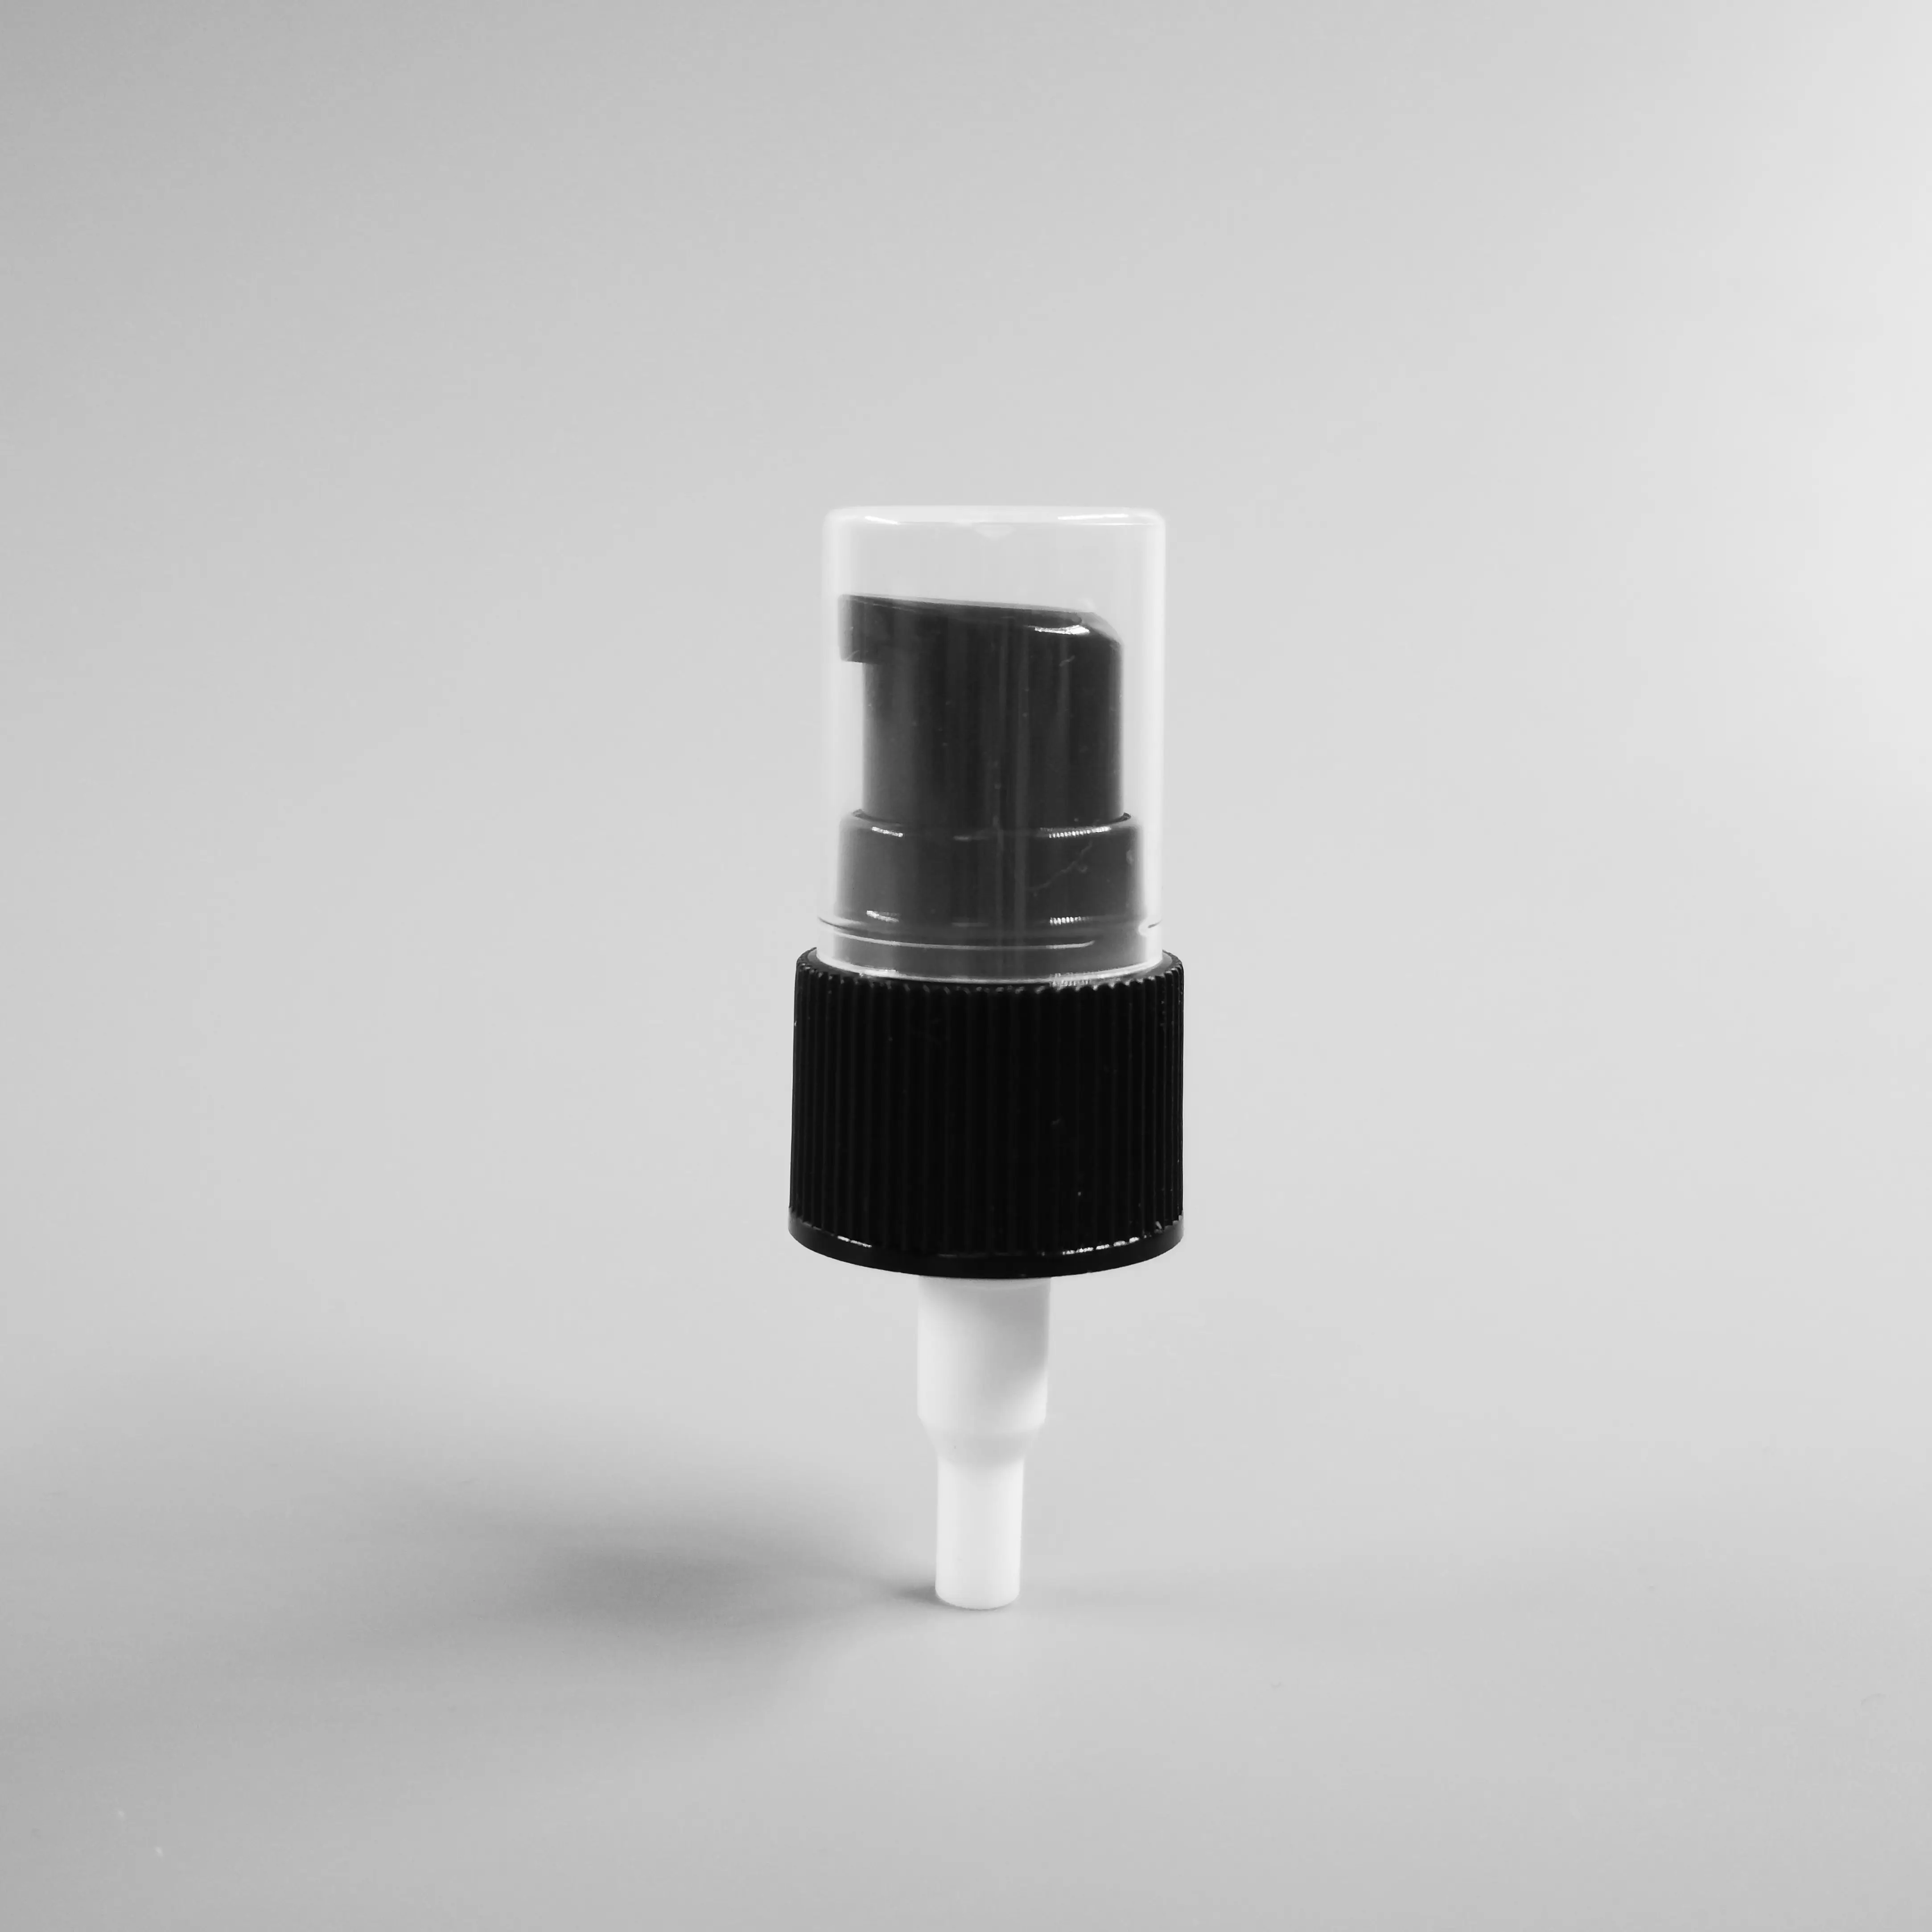 Ningbo Yuyao оптовая продажа черный пластиковый 20/410 насос для лосьона с половинной крышкой